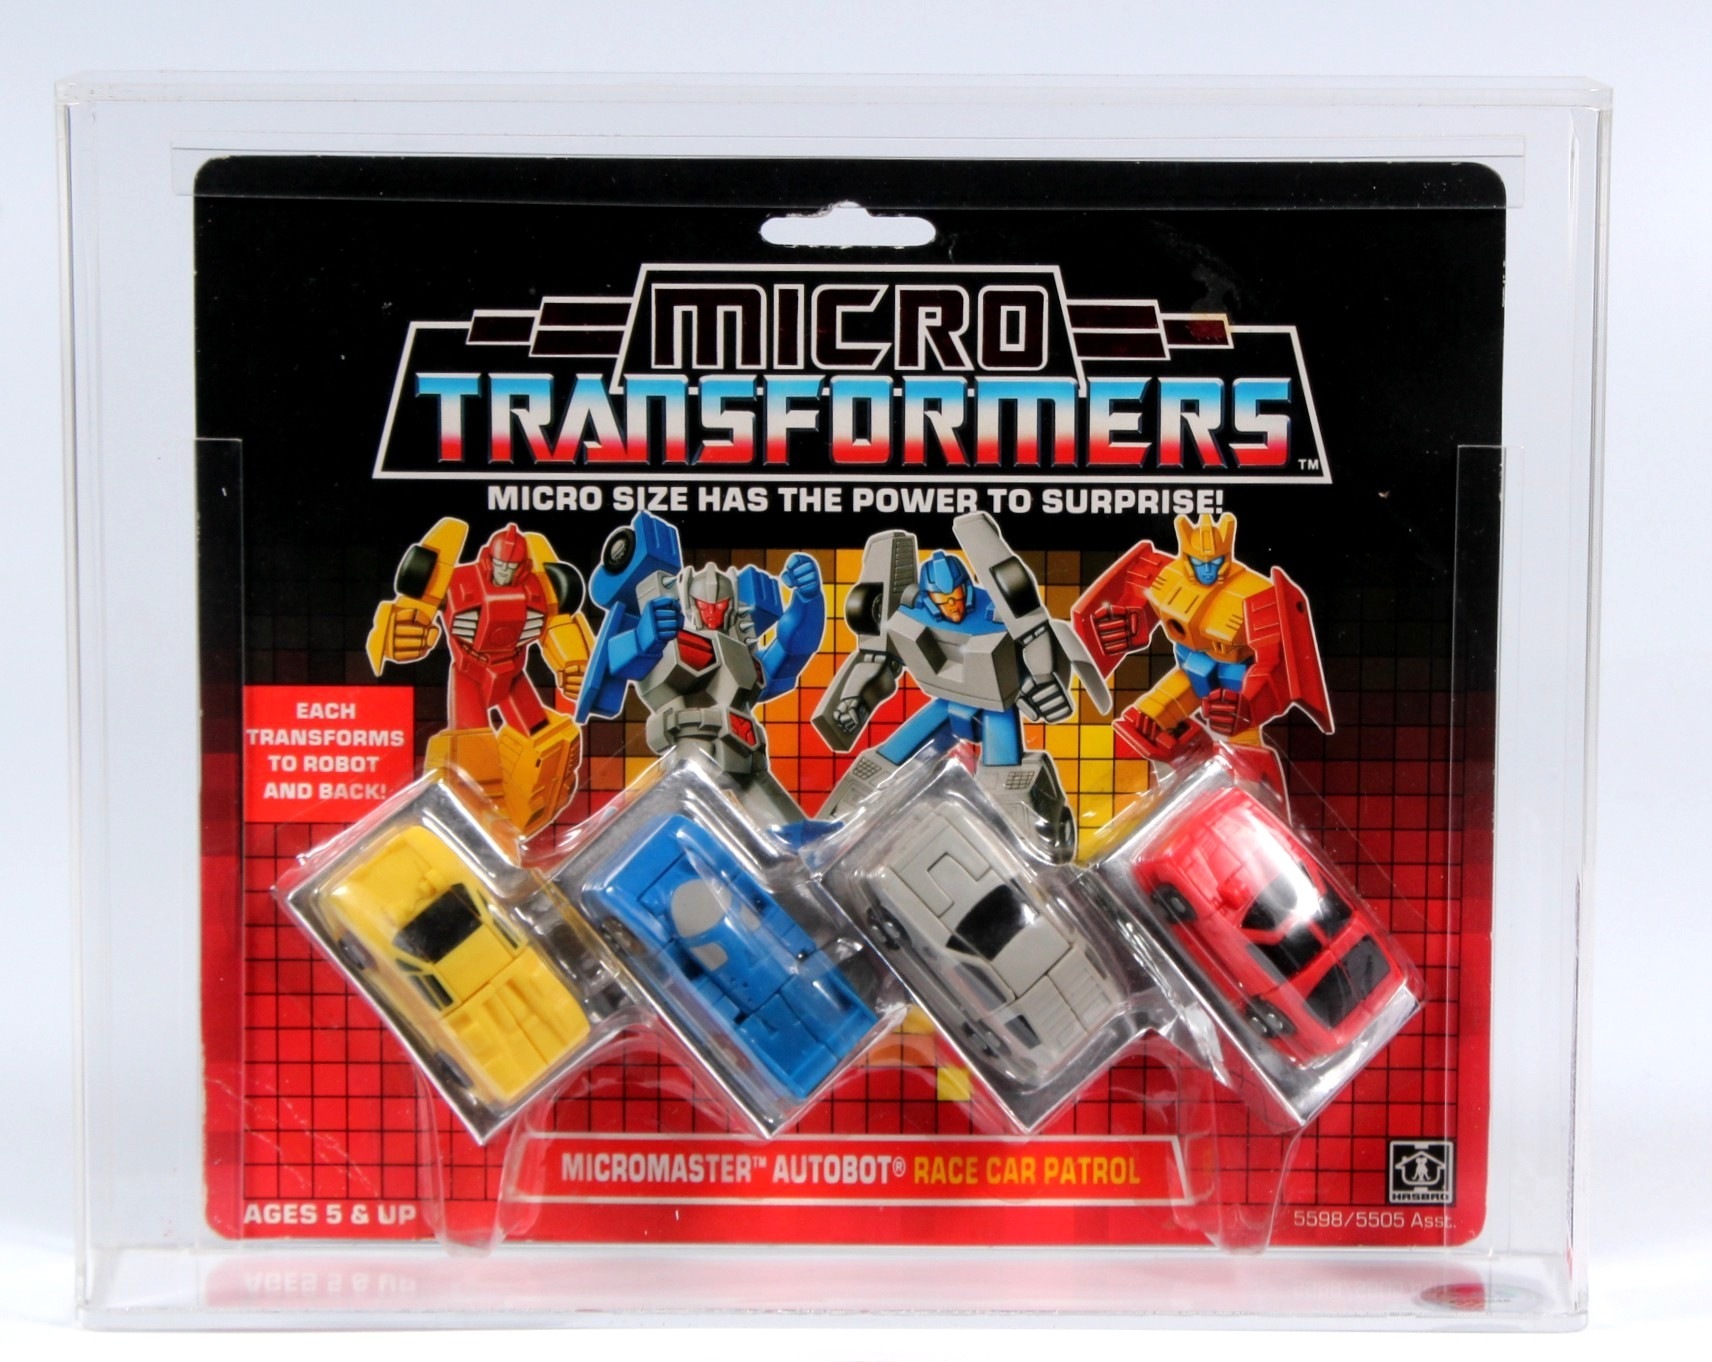 Трансформеры 1988. Трансформеры Micron micromasters6. Трансформеры микро Формат.